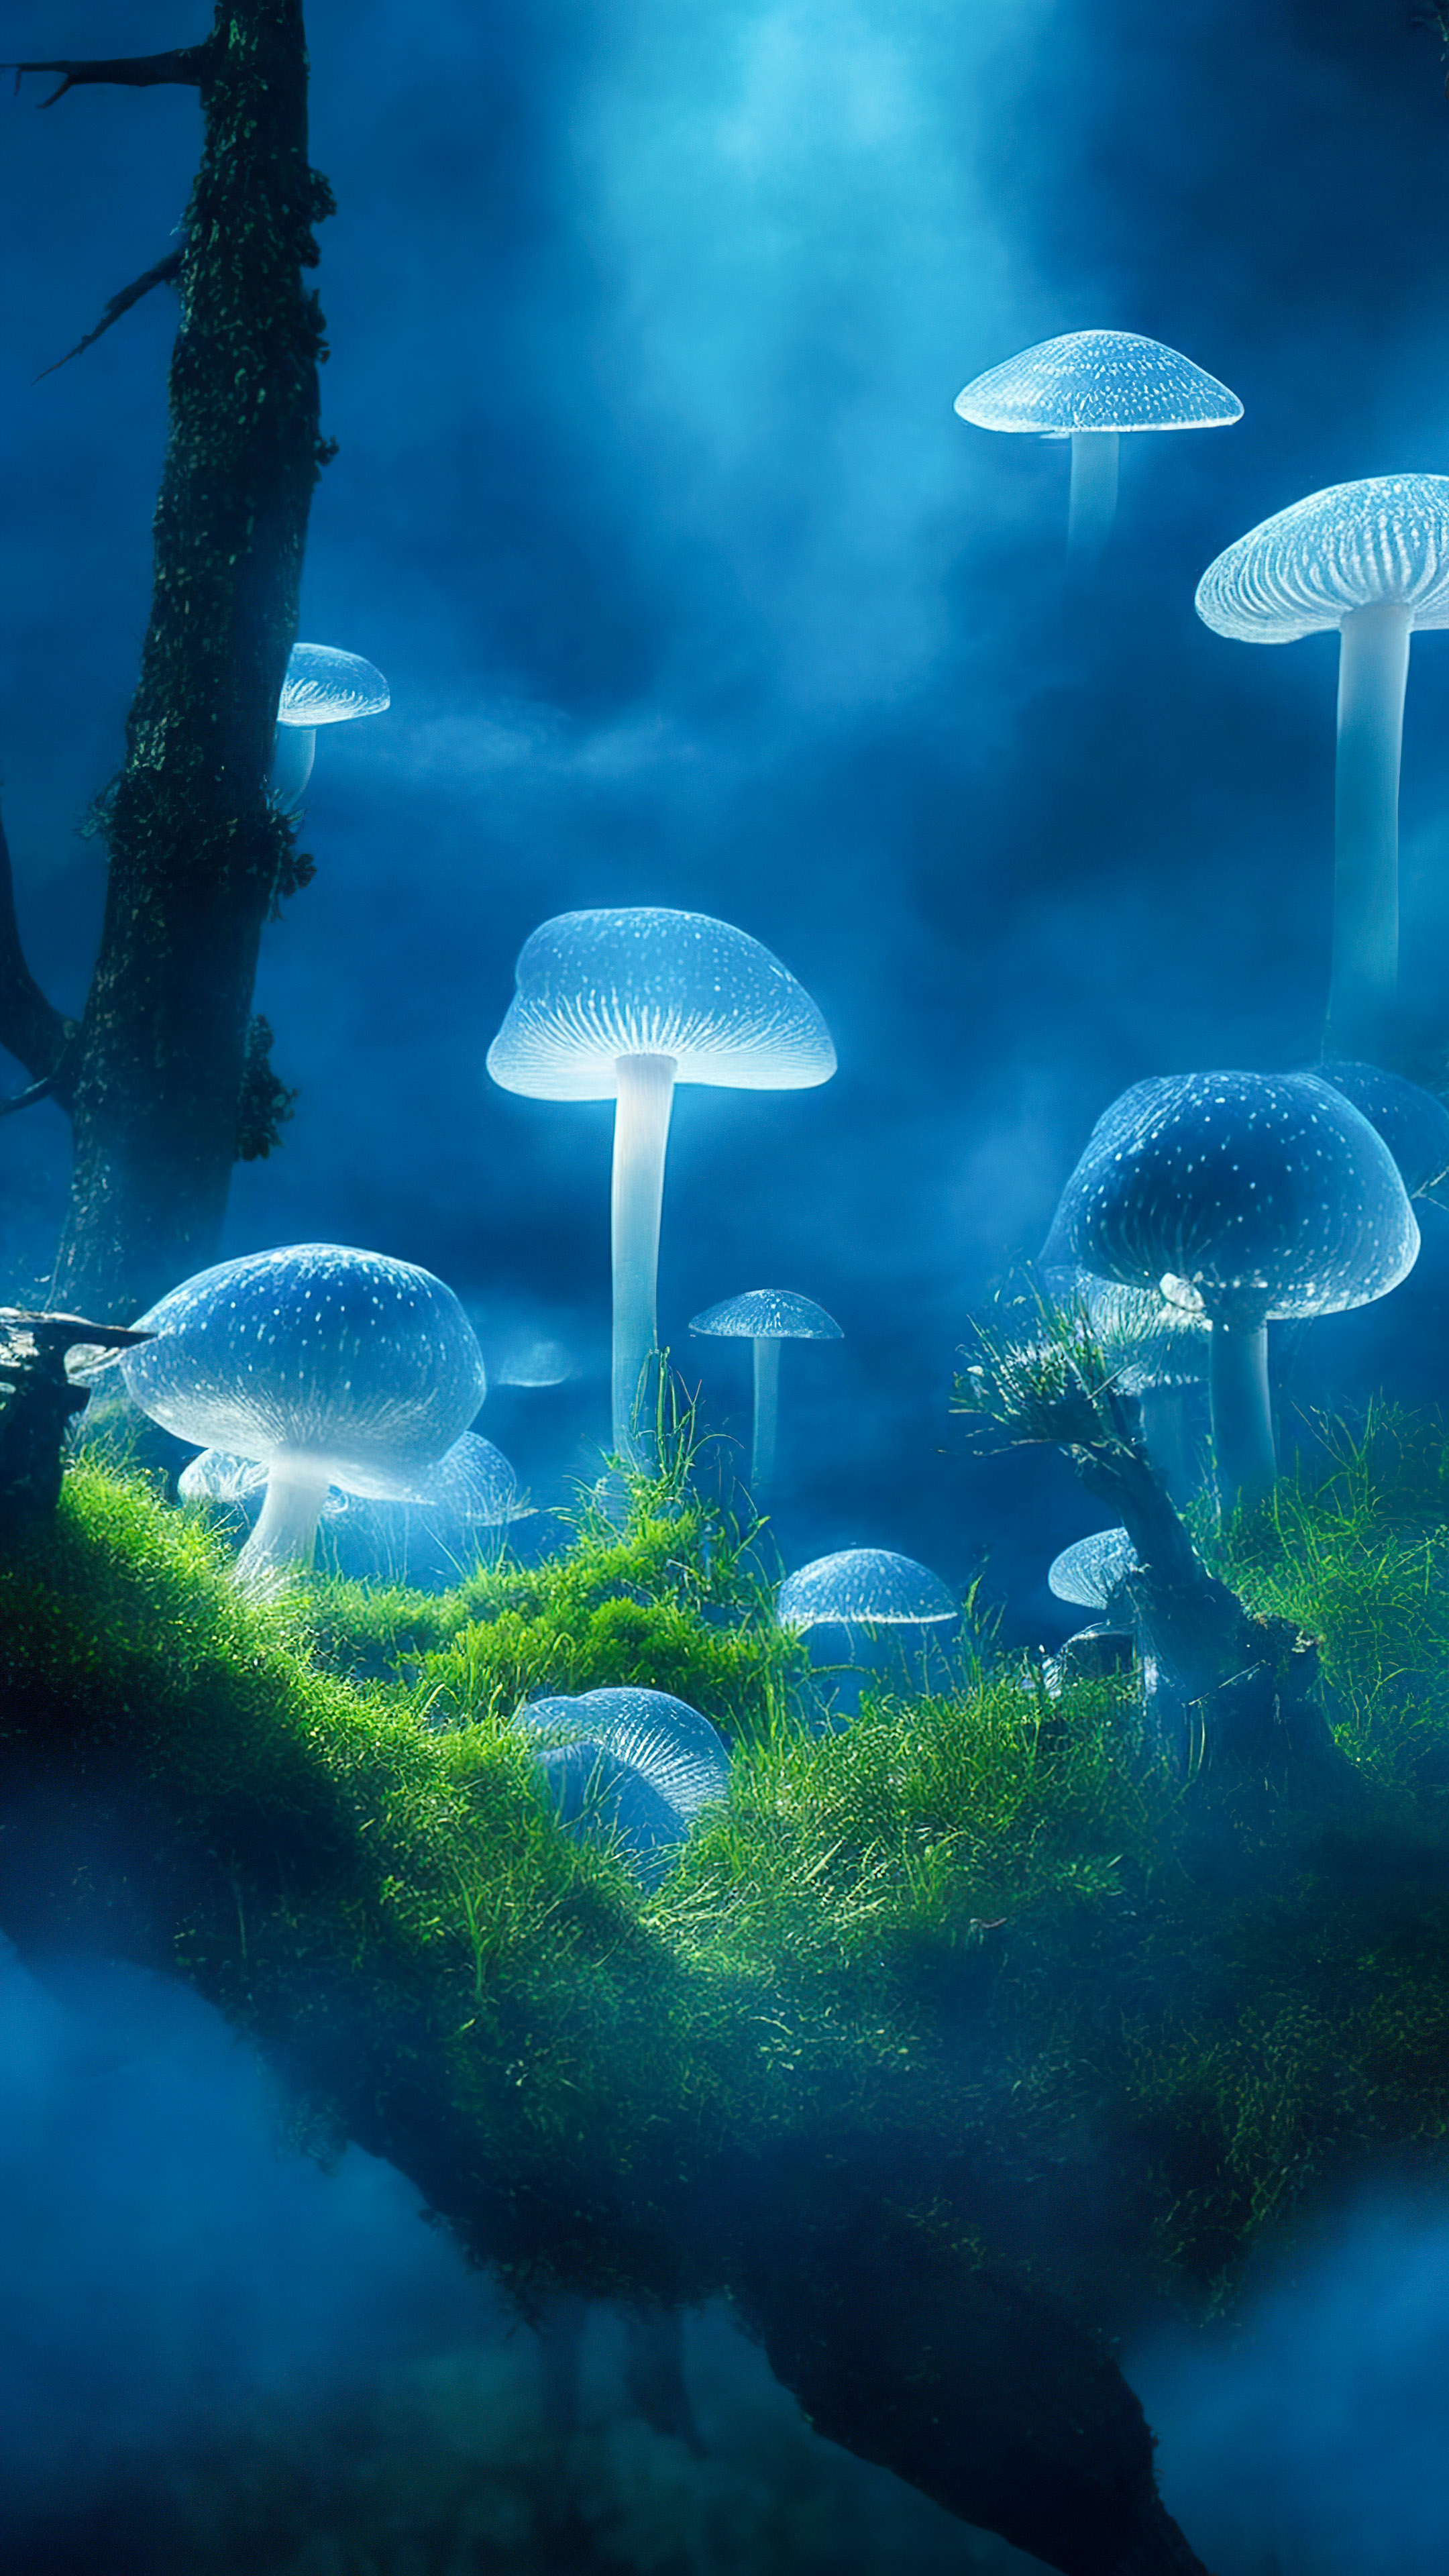 Perdez-vous dans la magie de nos jolis arrière-plans de nature, révélant une clairière mystique avec des champignons bioluminescents, créant une scène enchantée et surnaturelle.